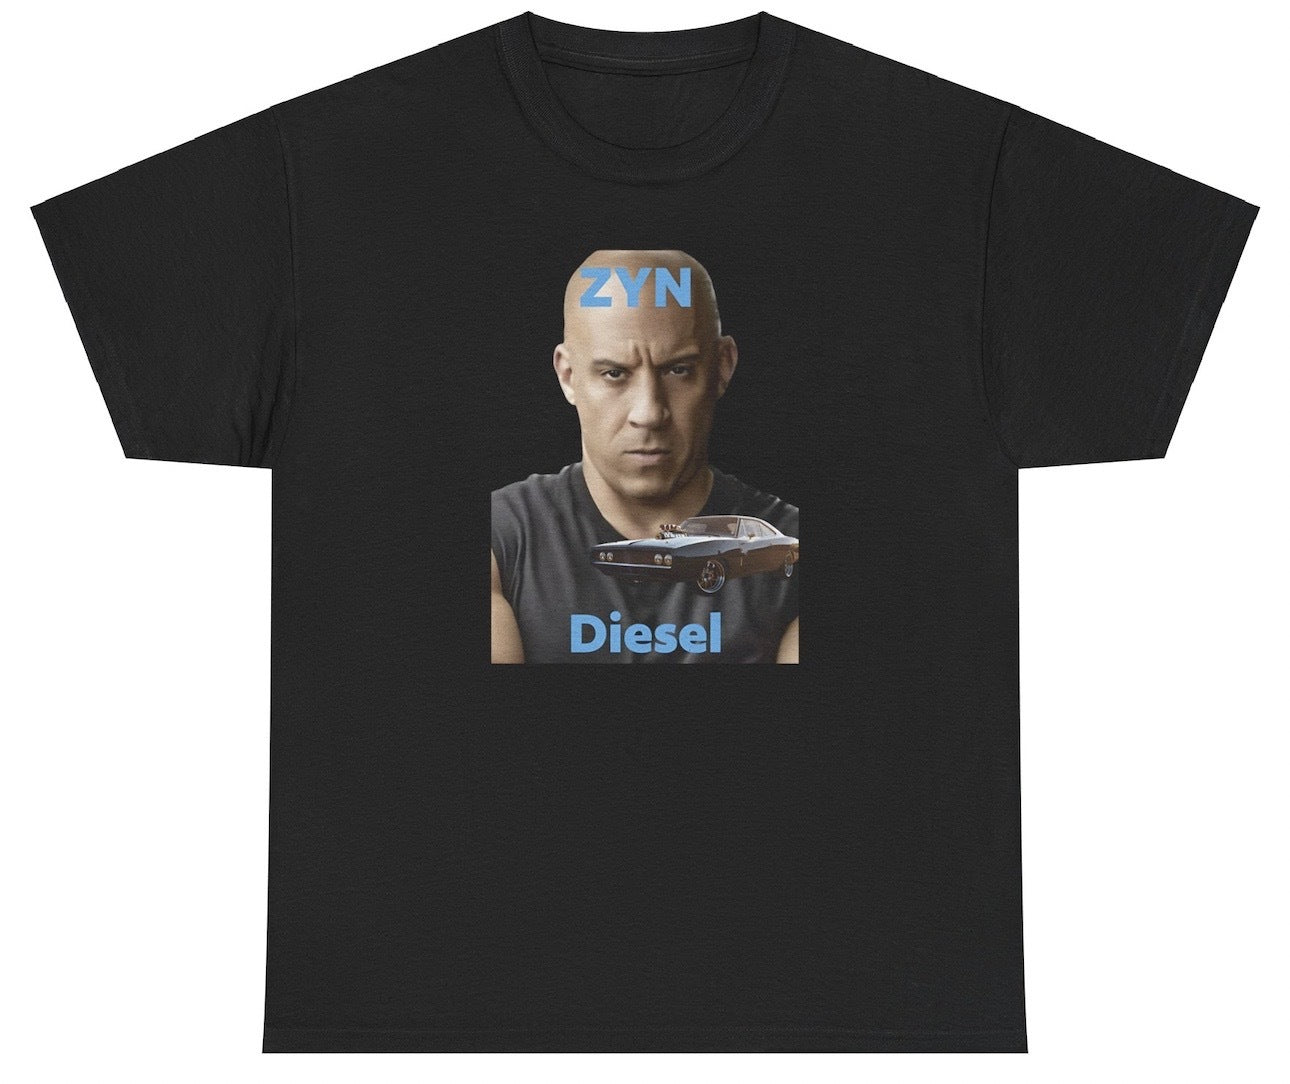 AAA Zyn Diesel T Shirt